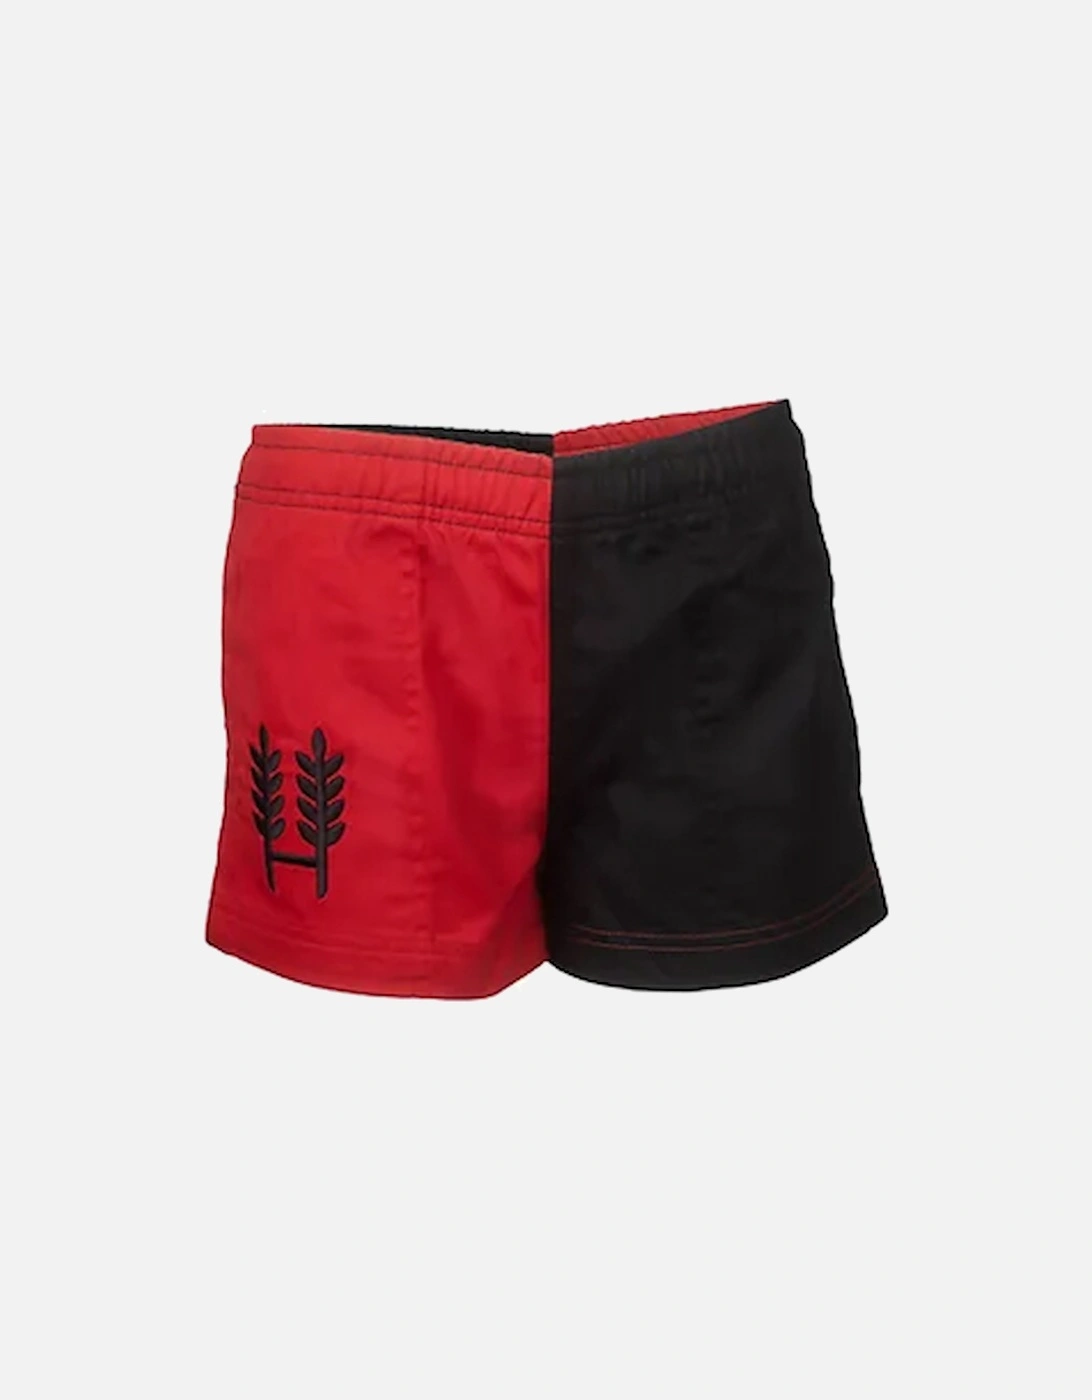 Harlequin Kids Shorts Red/Black, 3 of 2